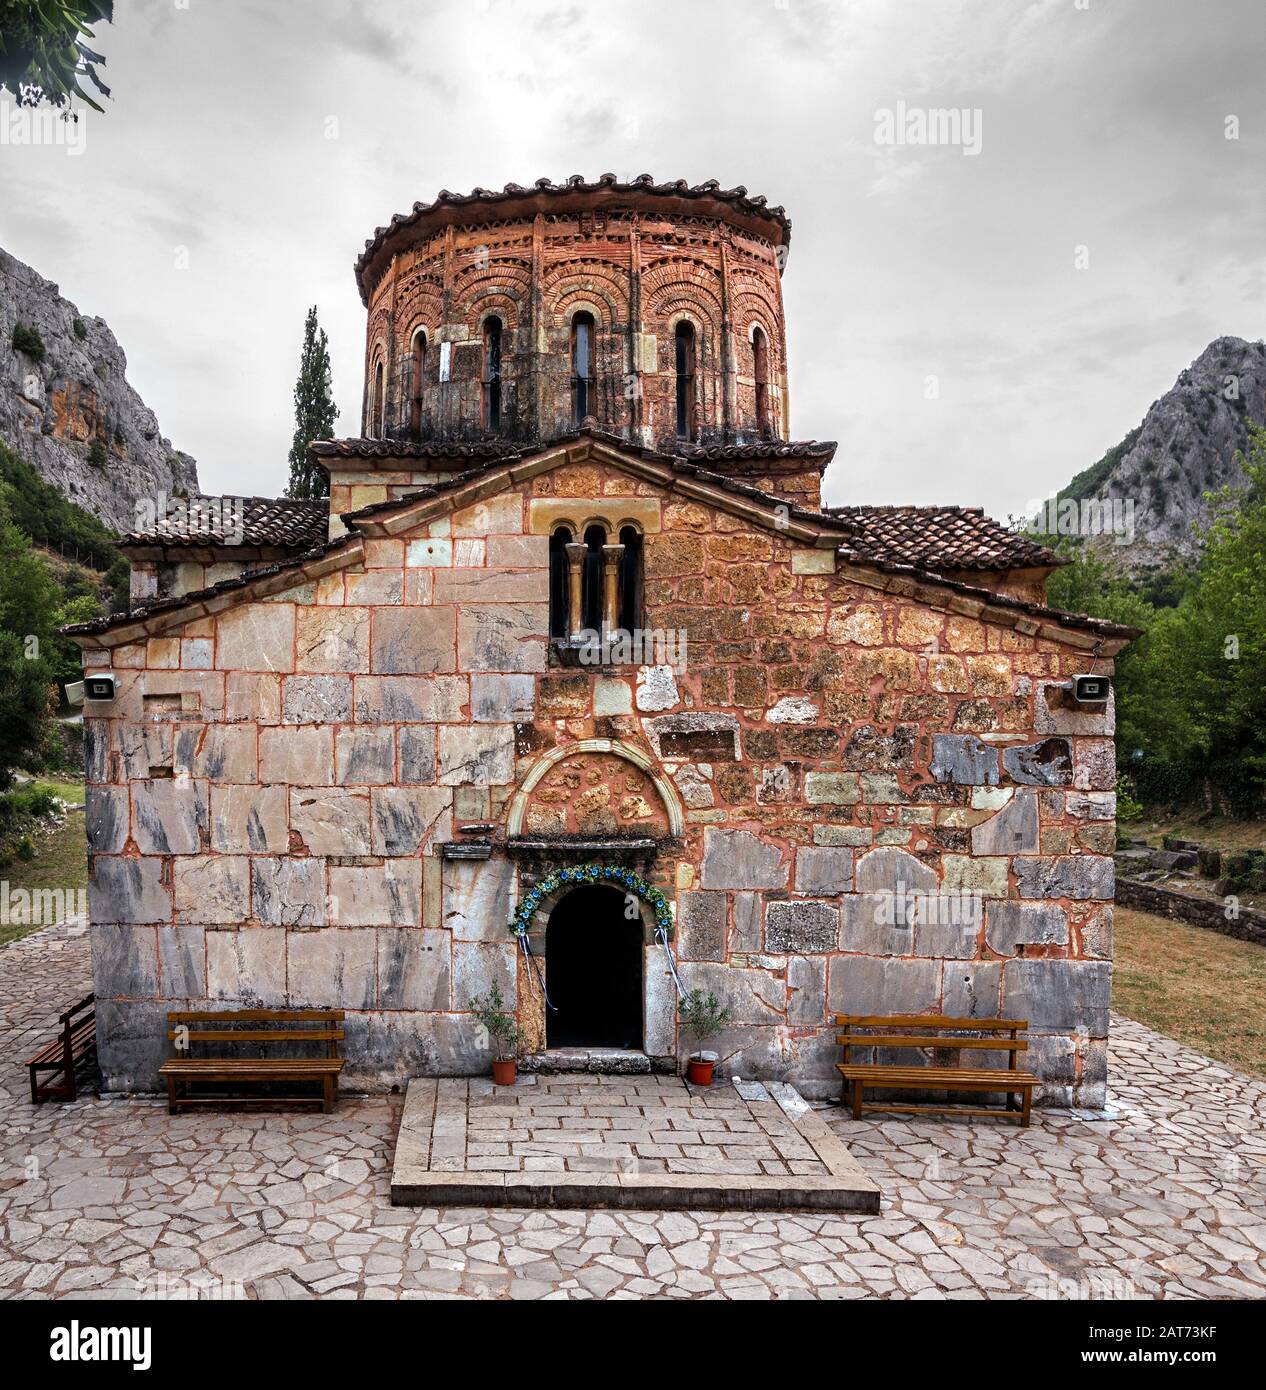 Le temple byzantin Porta panagia, sur la place Pyli Trikalon (Pili Trikalon), construit en 1283 AD, Grèce Banque D'Images